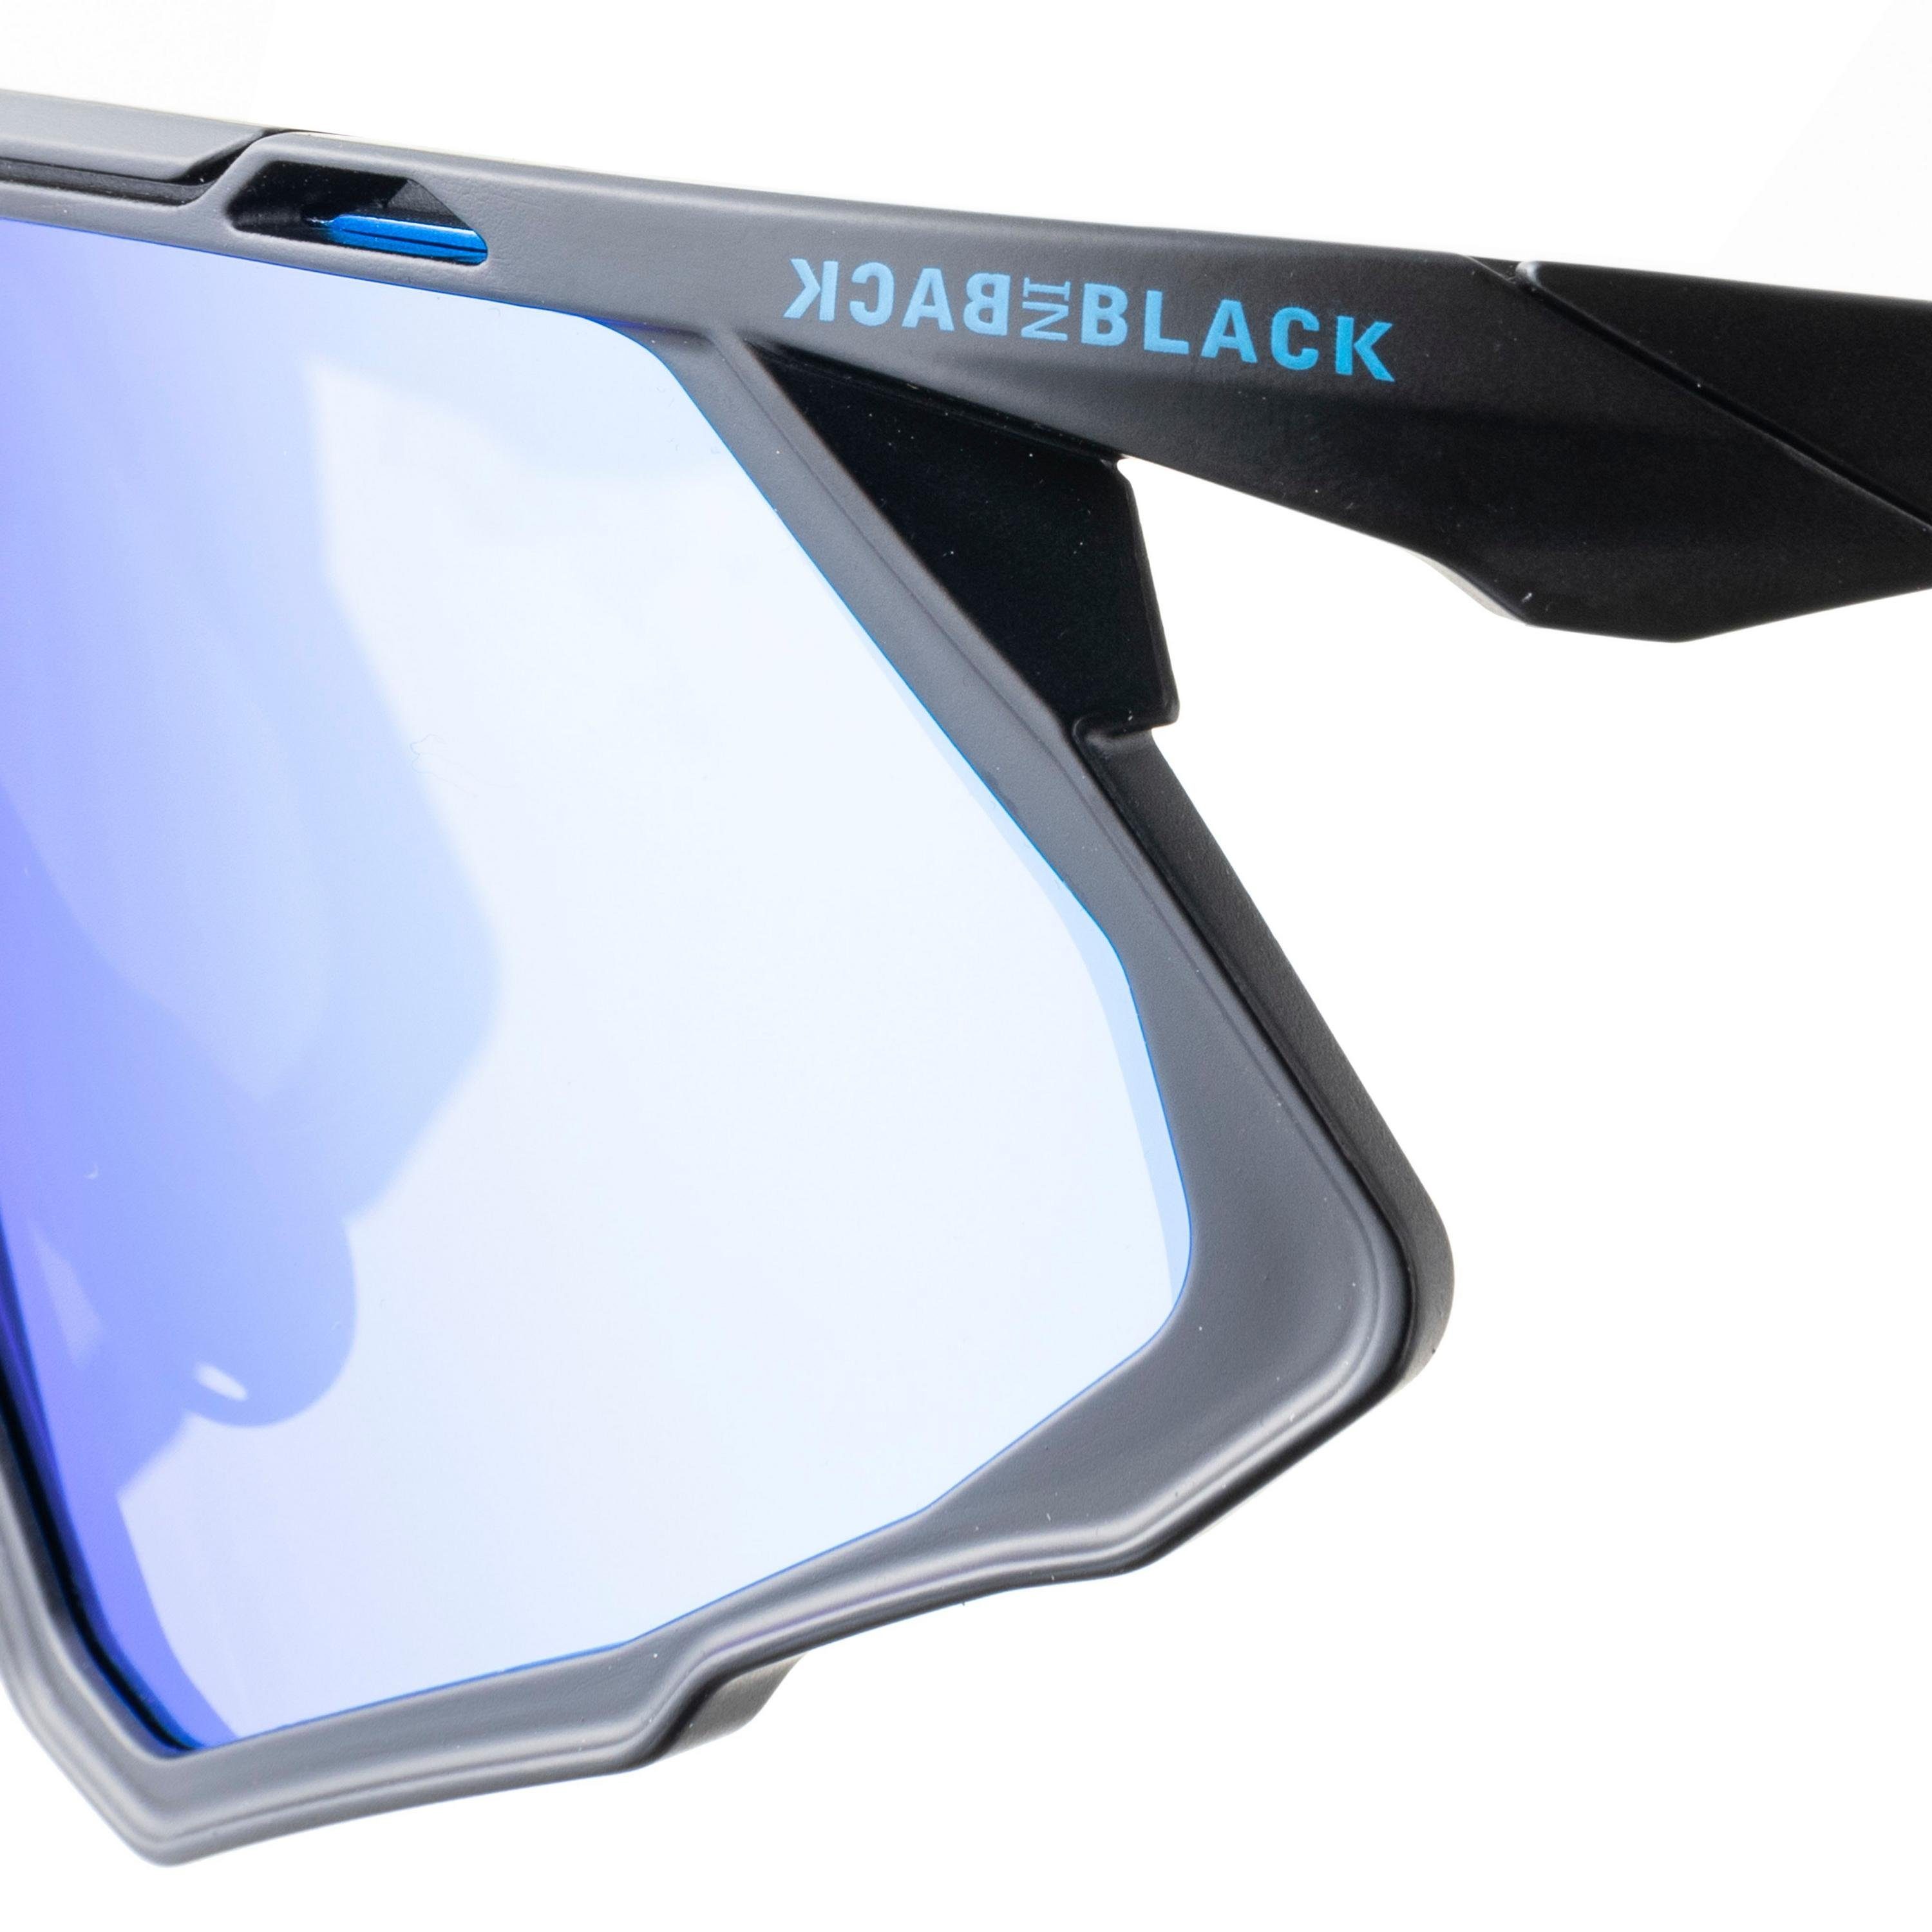 BACK IN Gläser Sonnenbrille BLACK Sitz,verspiegelte flexibler Eyewear Nasensteg,rutschsicherer